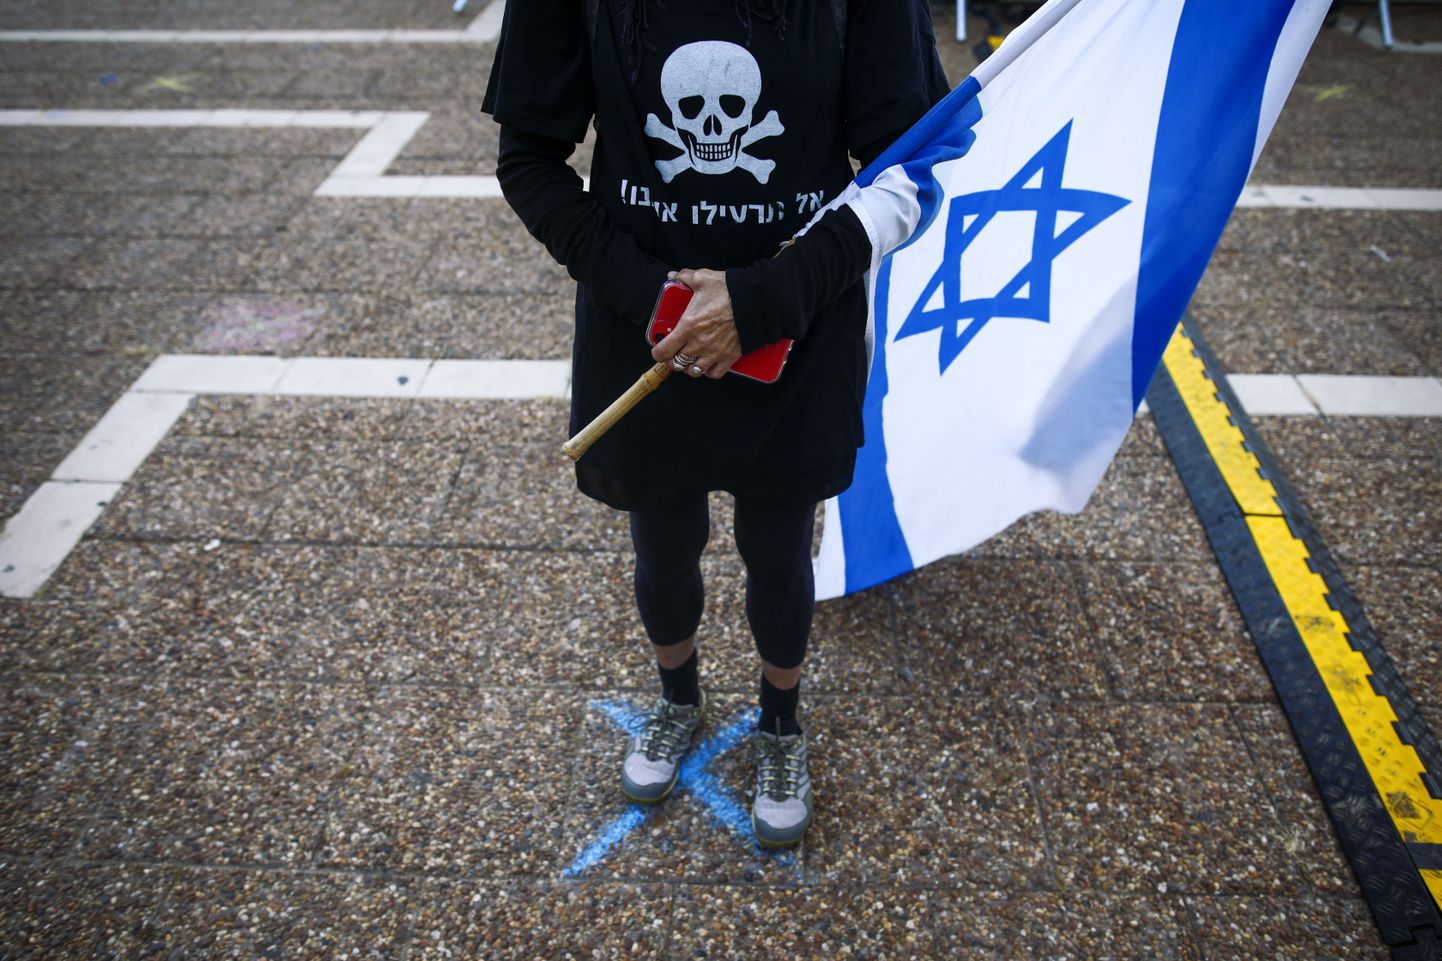 Asfaldile kriidiga joonistatud rist on aidanud viimaste nädalate meeleavaldustel hoida Iisraelis inimeste vahel vajalikku distantsi ning nii pole ka Tel Avivi politseil olnud põhjust sekkuda protestidesse korruptsioonis süüdistatava peaministri Benjamin Netanyahu vastu.